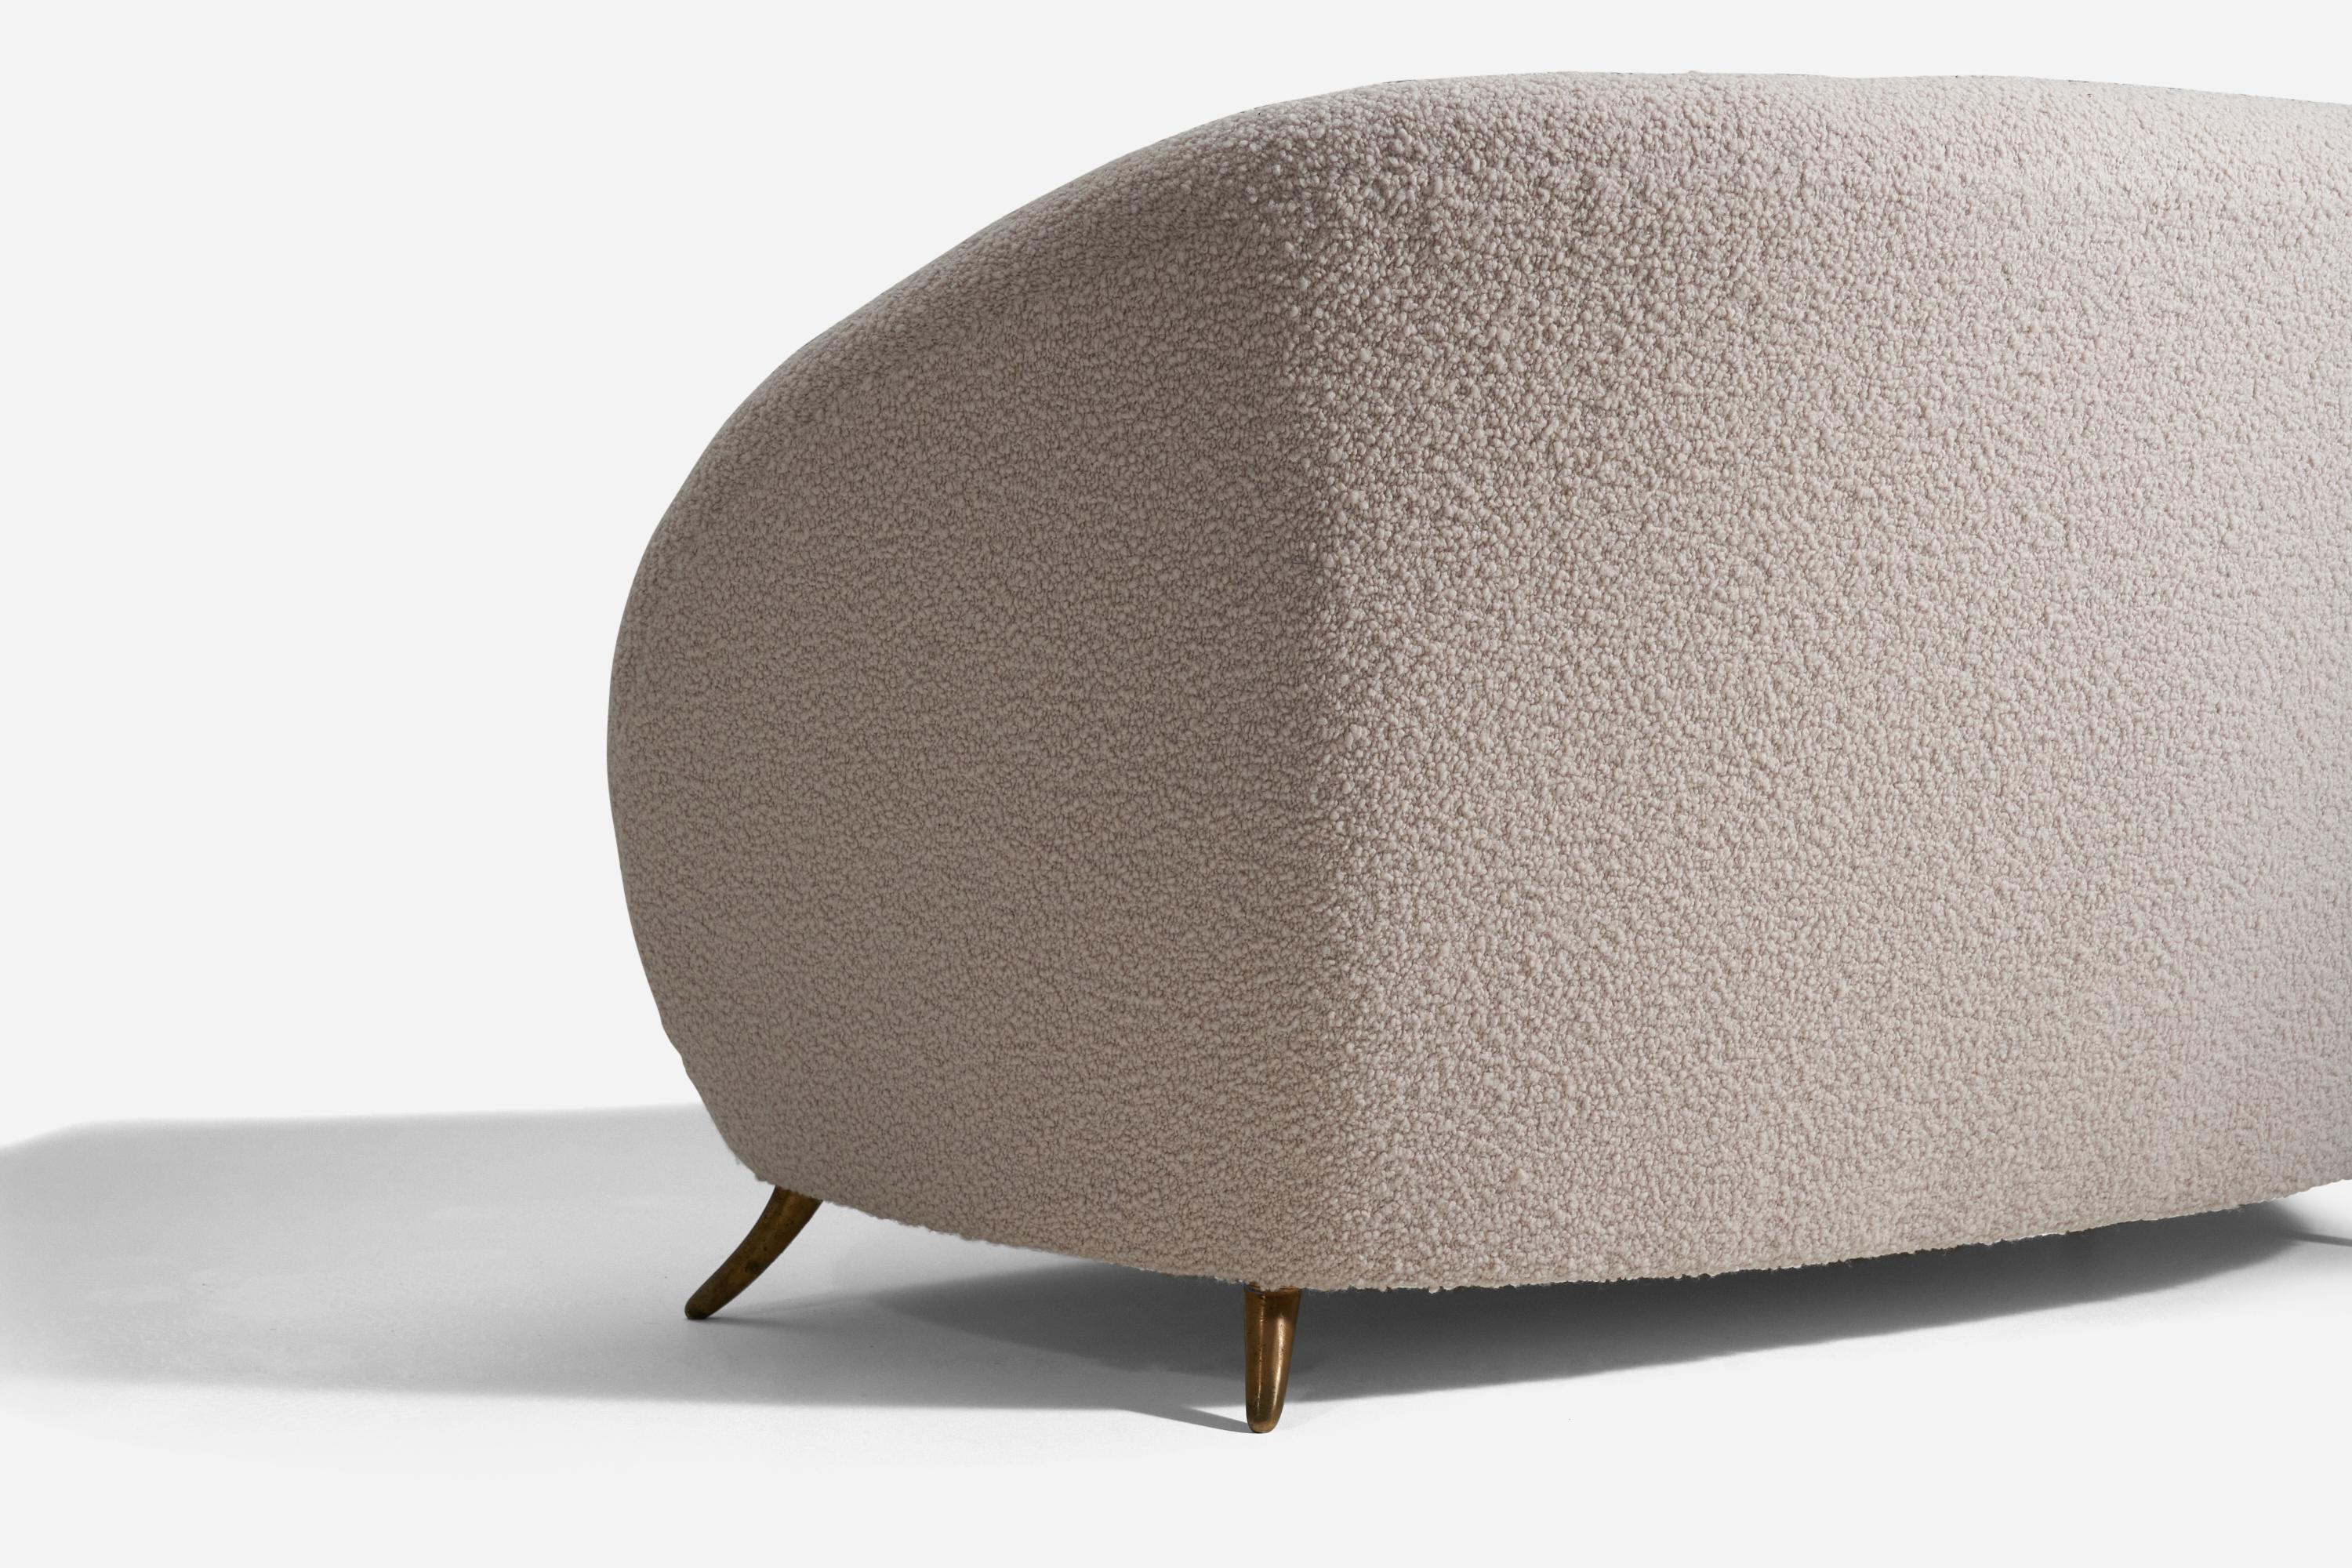 Ein organisches Sofa mit zwei Sitzplätzen. Entworfen von Guglielmo Veronesi, hergestellt von ISA Bergamo, Italien, 1950er Jahre. 

Neu gepolstert mit einem brandneuen, hochwertigen Bouclé-Stoff von Pierre Frey.